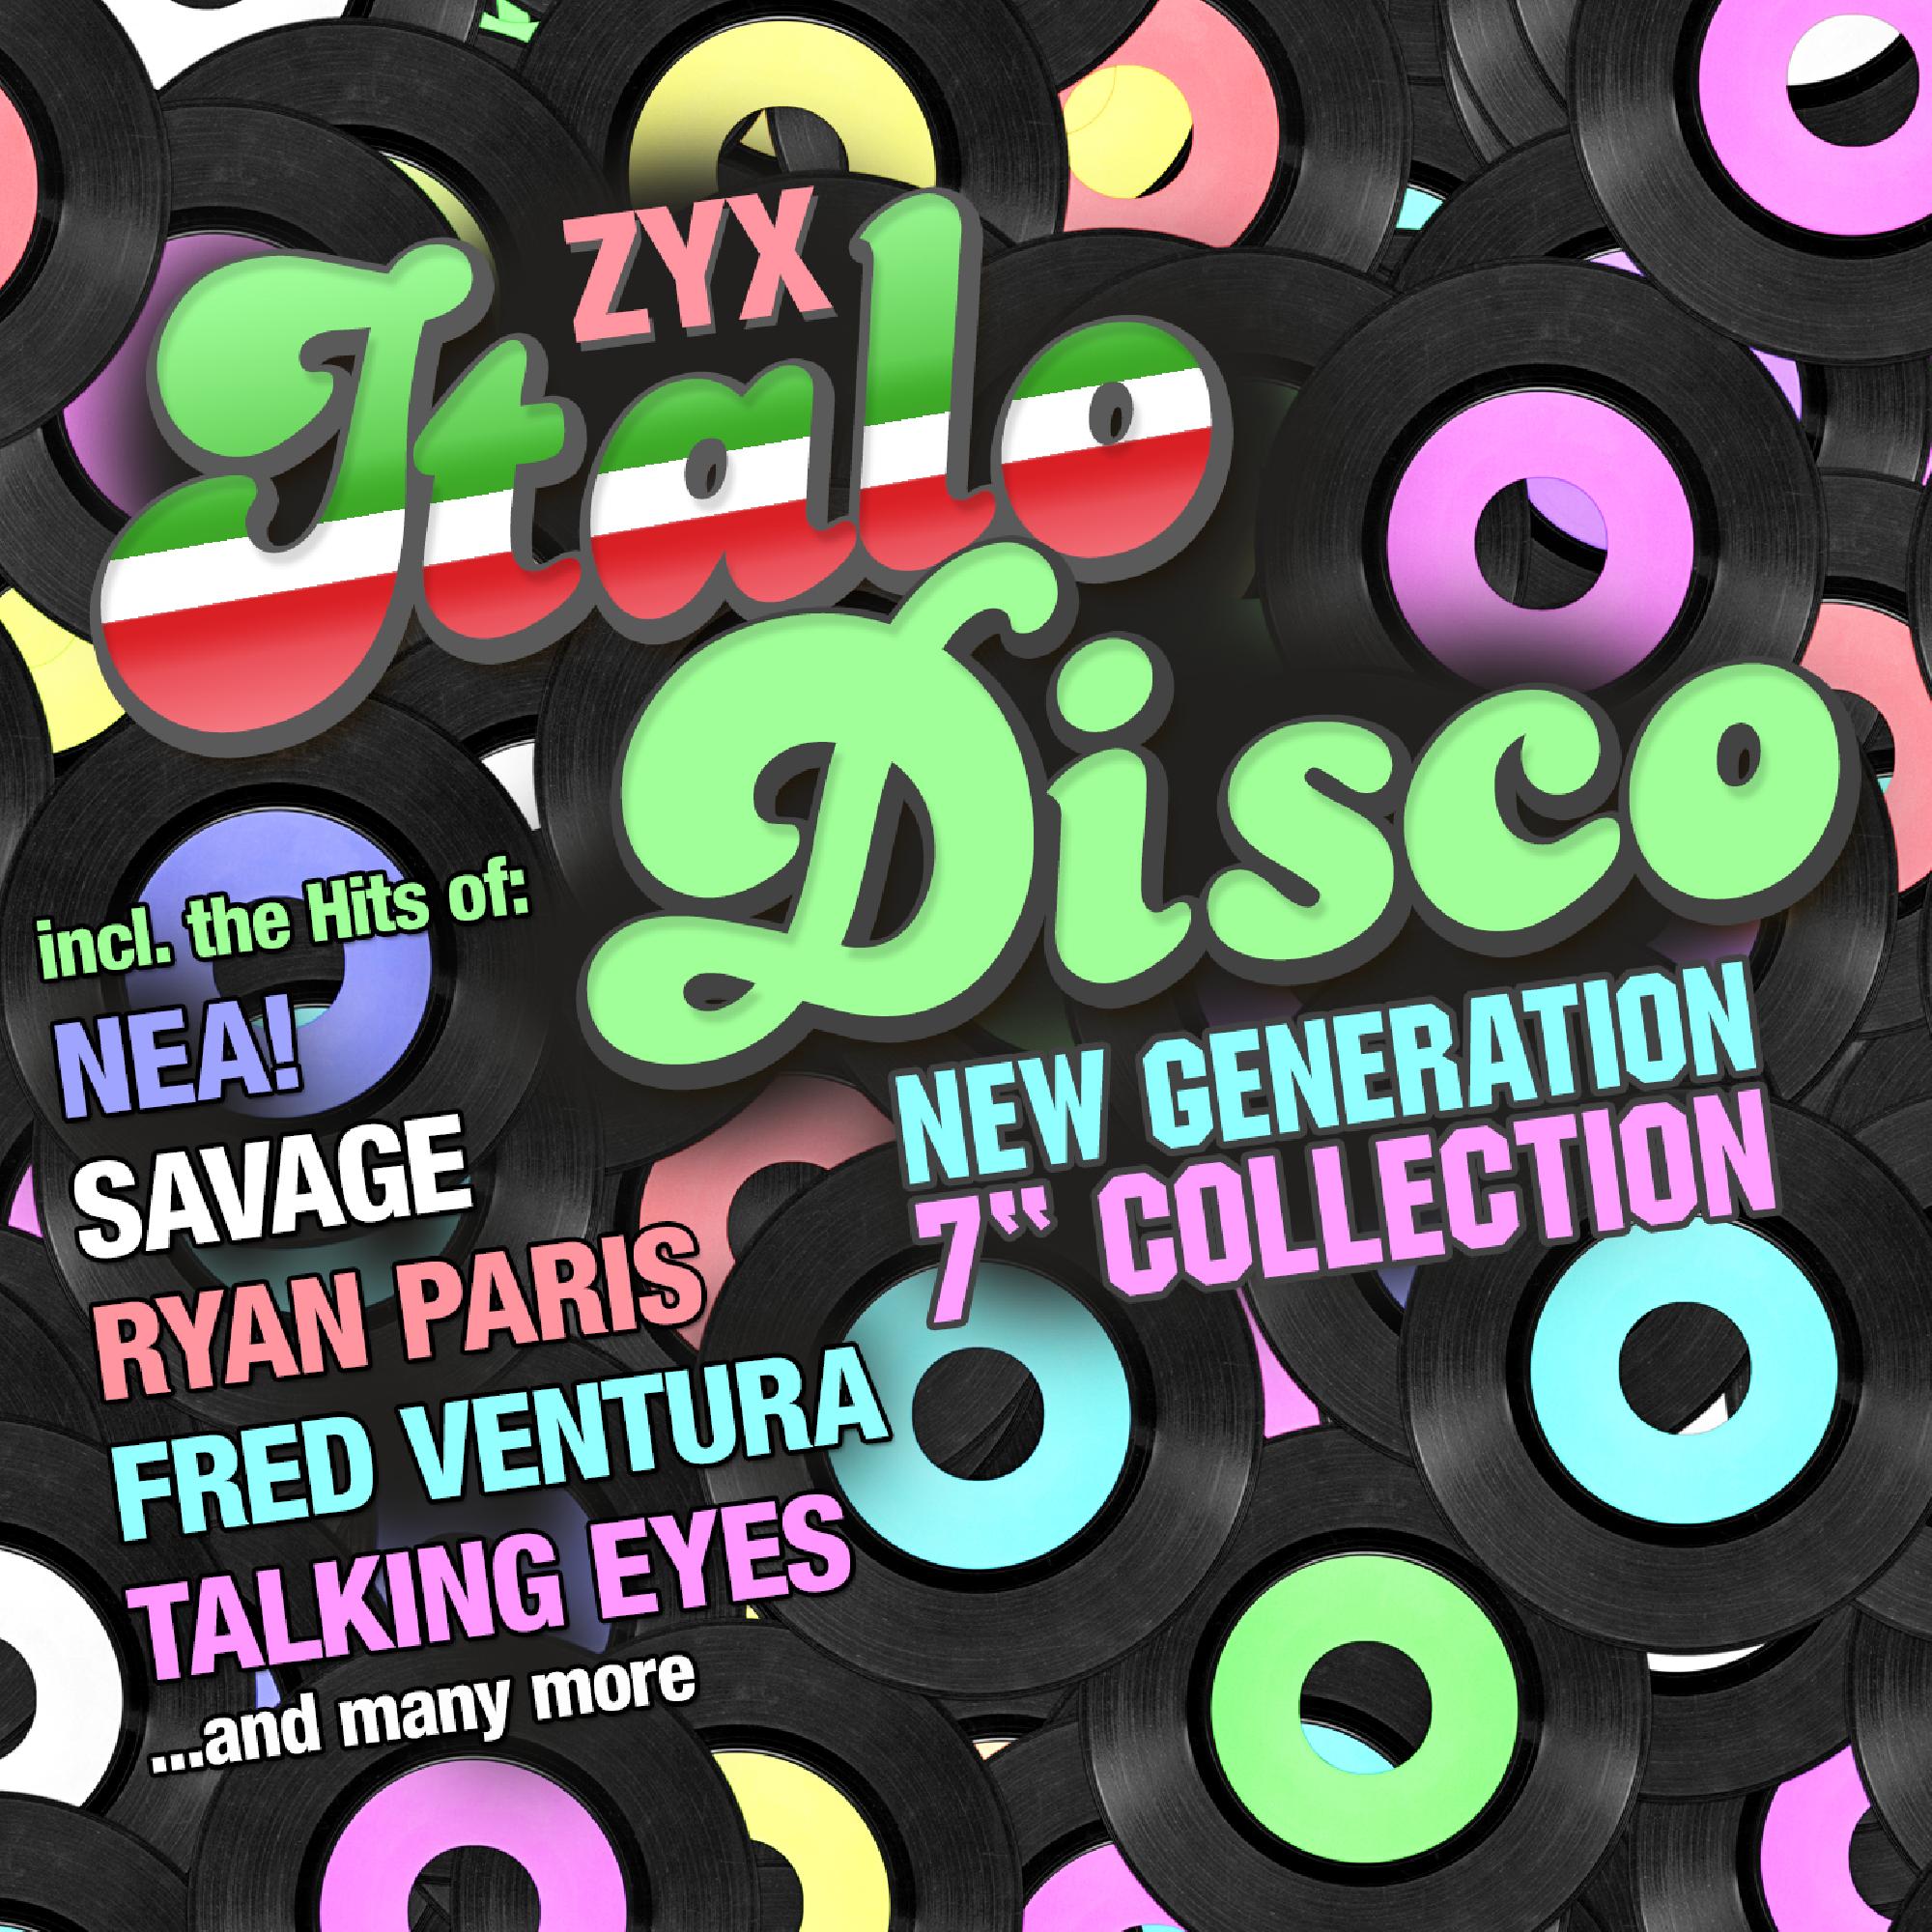 Zyx italo disco new. ZYX Italo Disco New Generation Vol 7 CD 2. ZYX Italo Disco New Generation Vol 7 CD 1. ZYX Italo Disco New Generation. Italo Disco New Generation обложки.